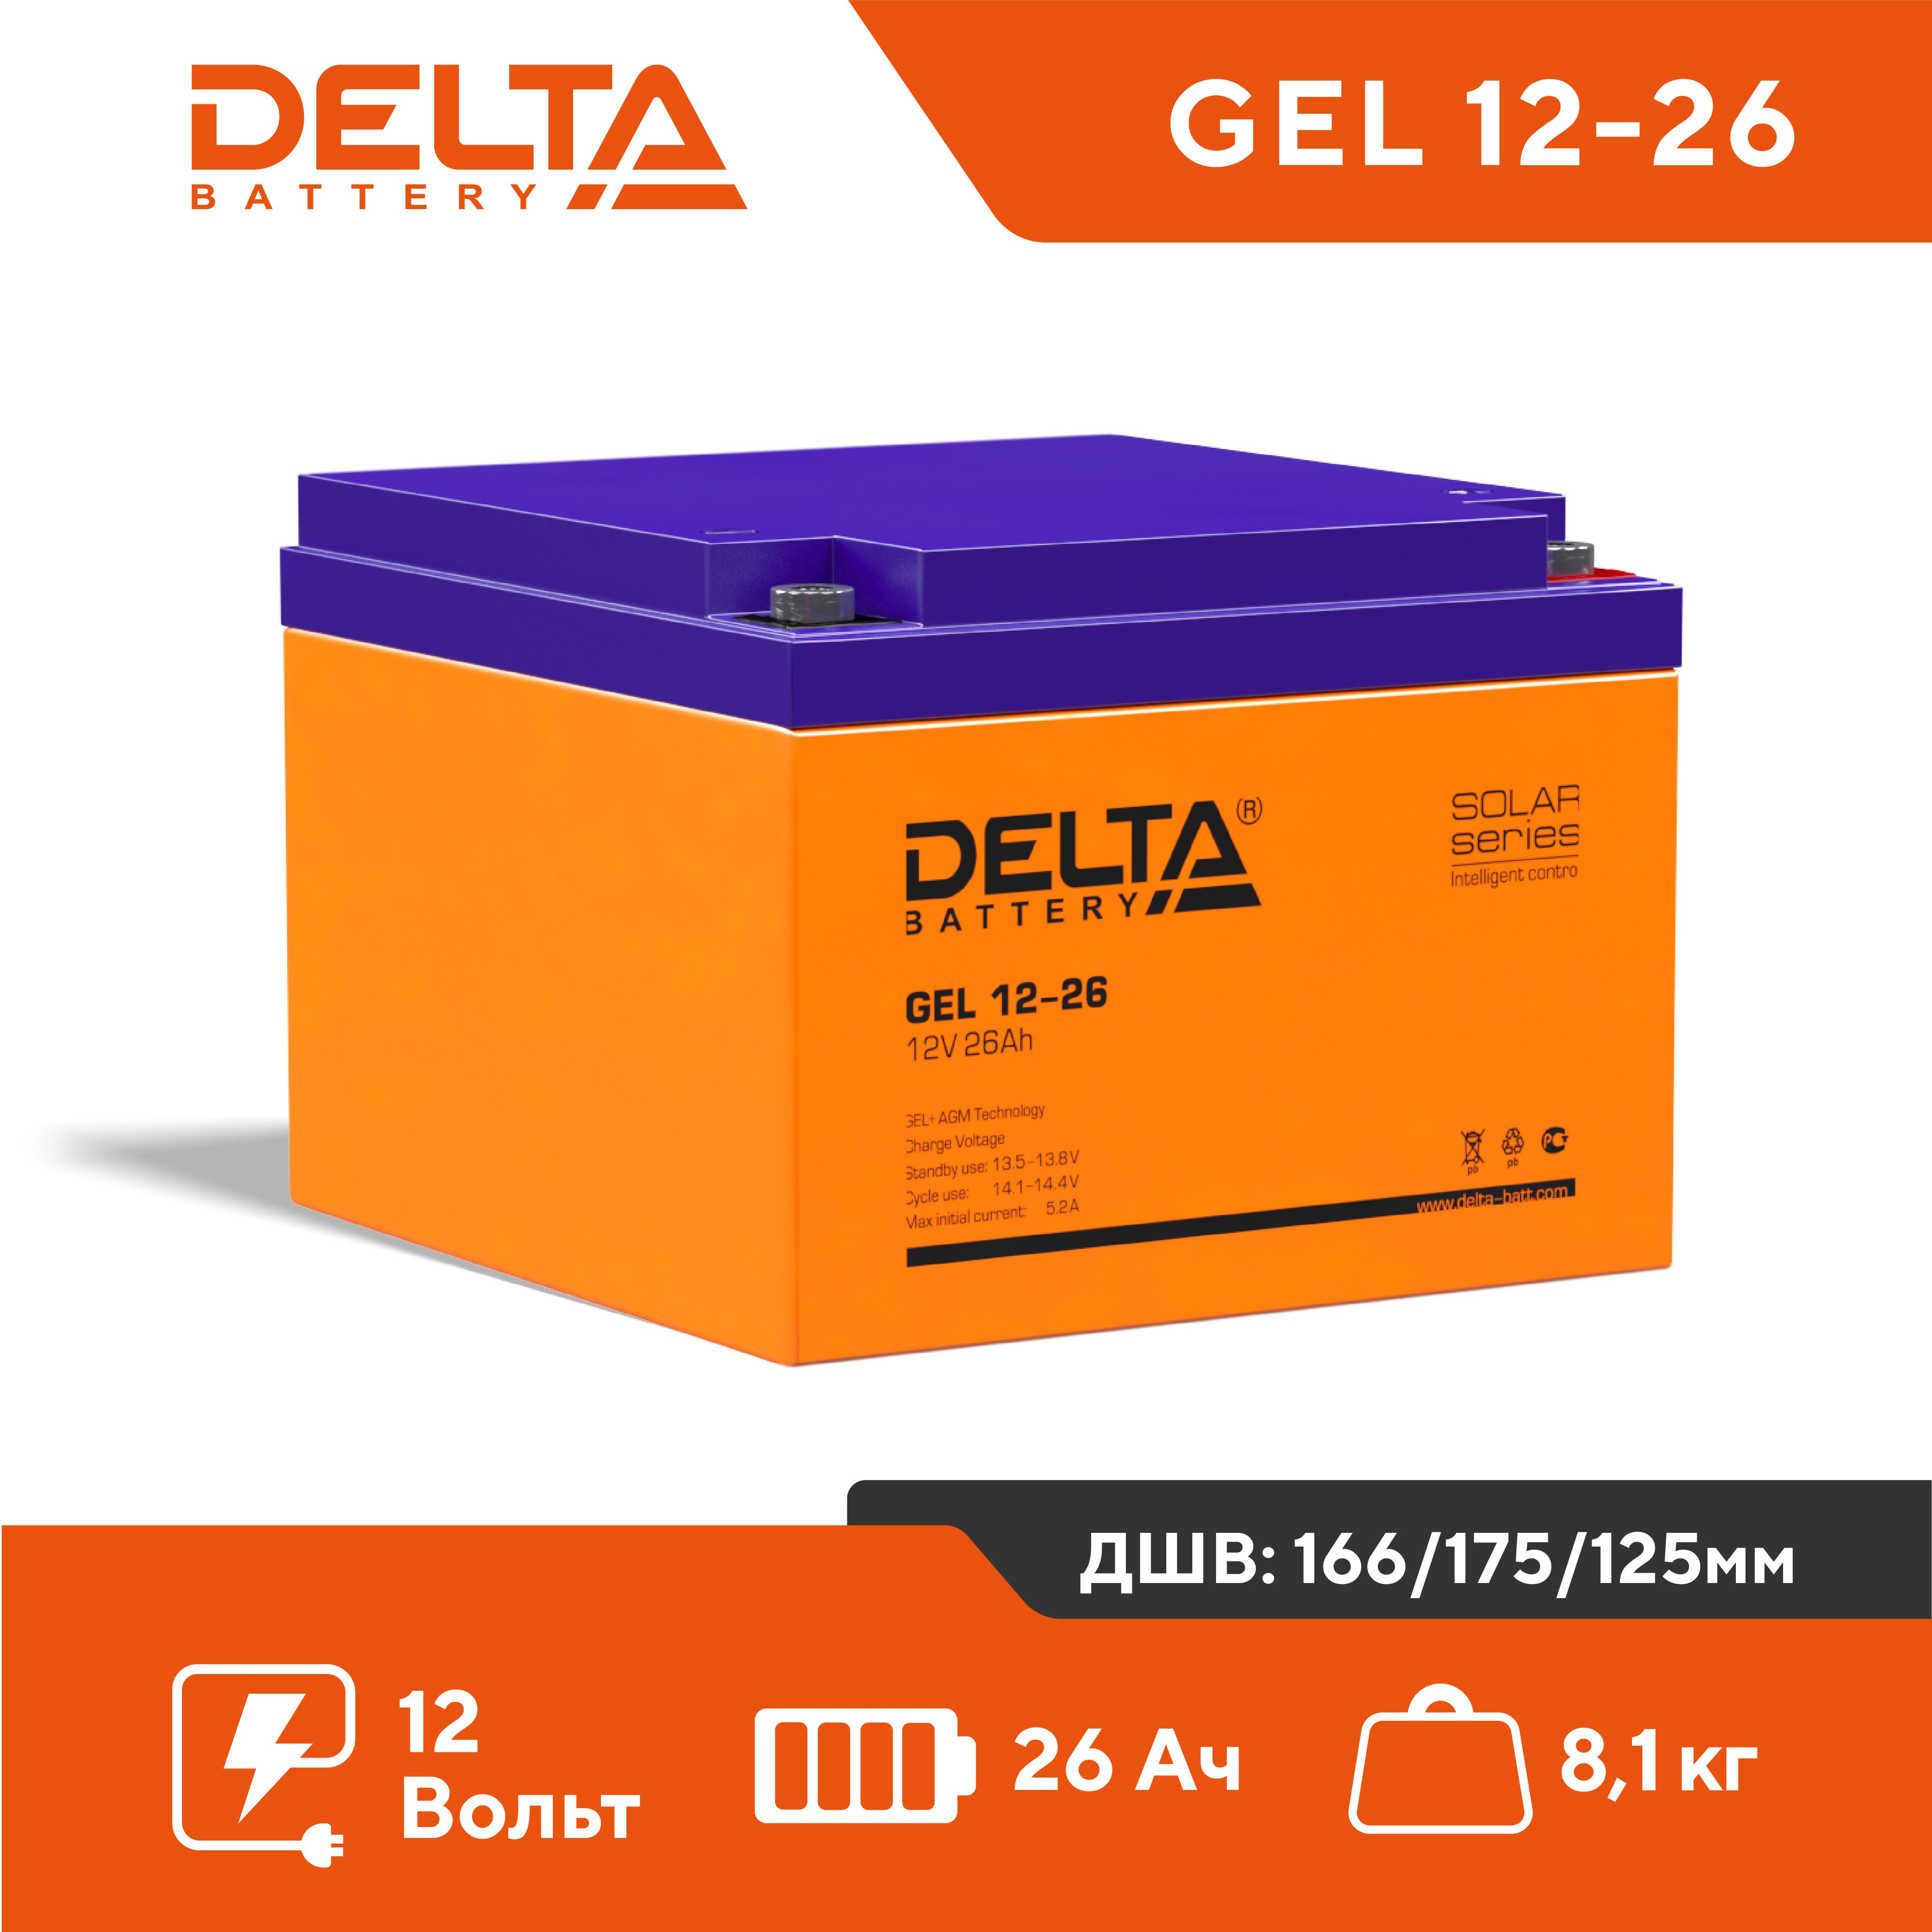 Гелевый аккумулятор Delta GEL 12-26